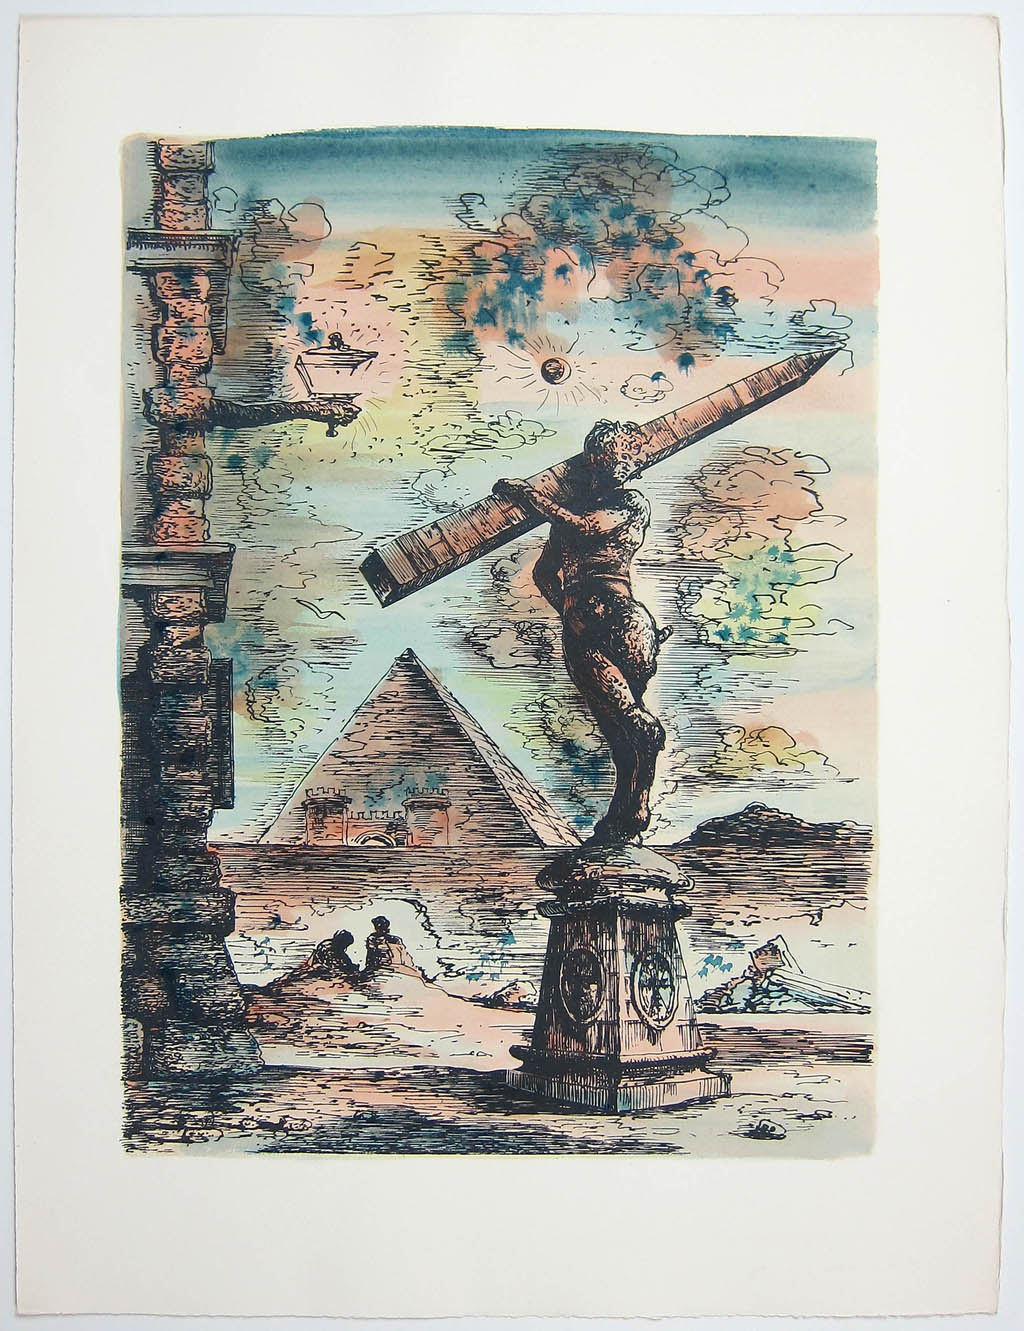 Eugene Berman - Viaggio in Italia - color lithograph - 1951 portfolio of lithographs and text